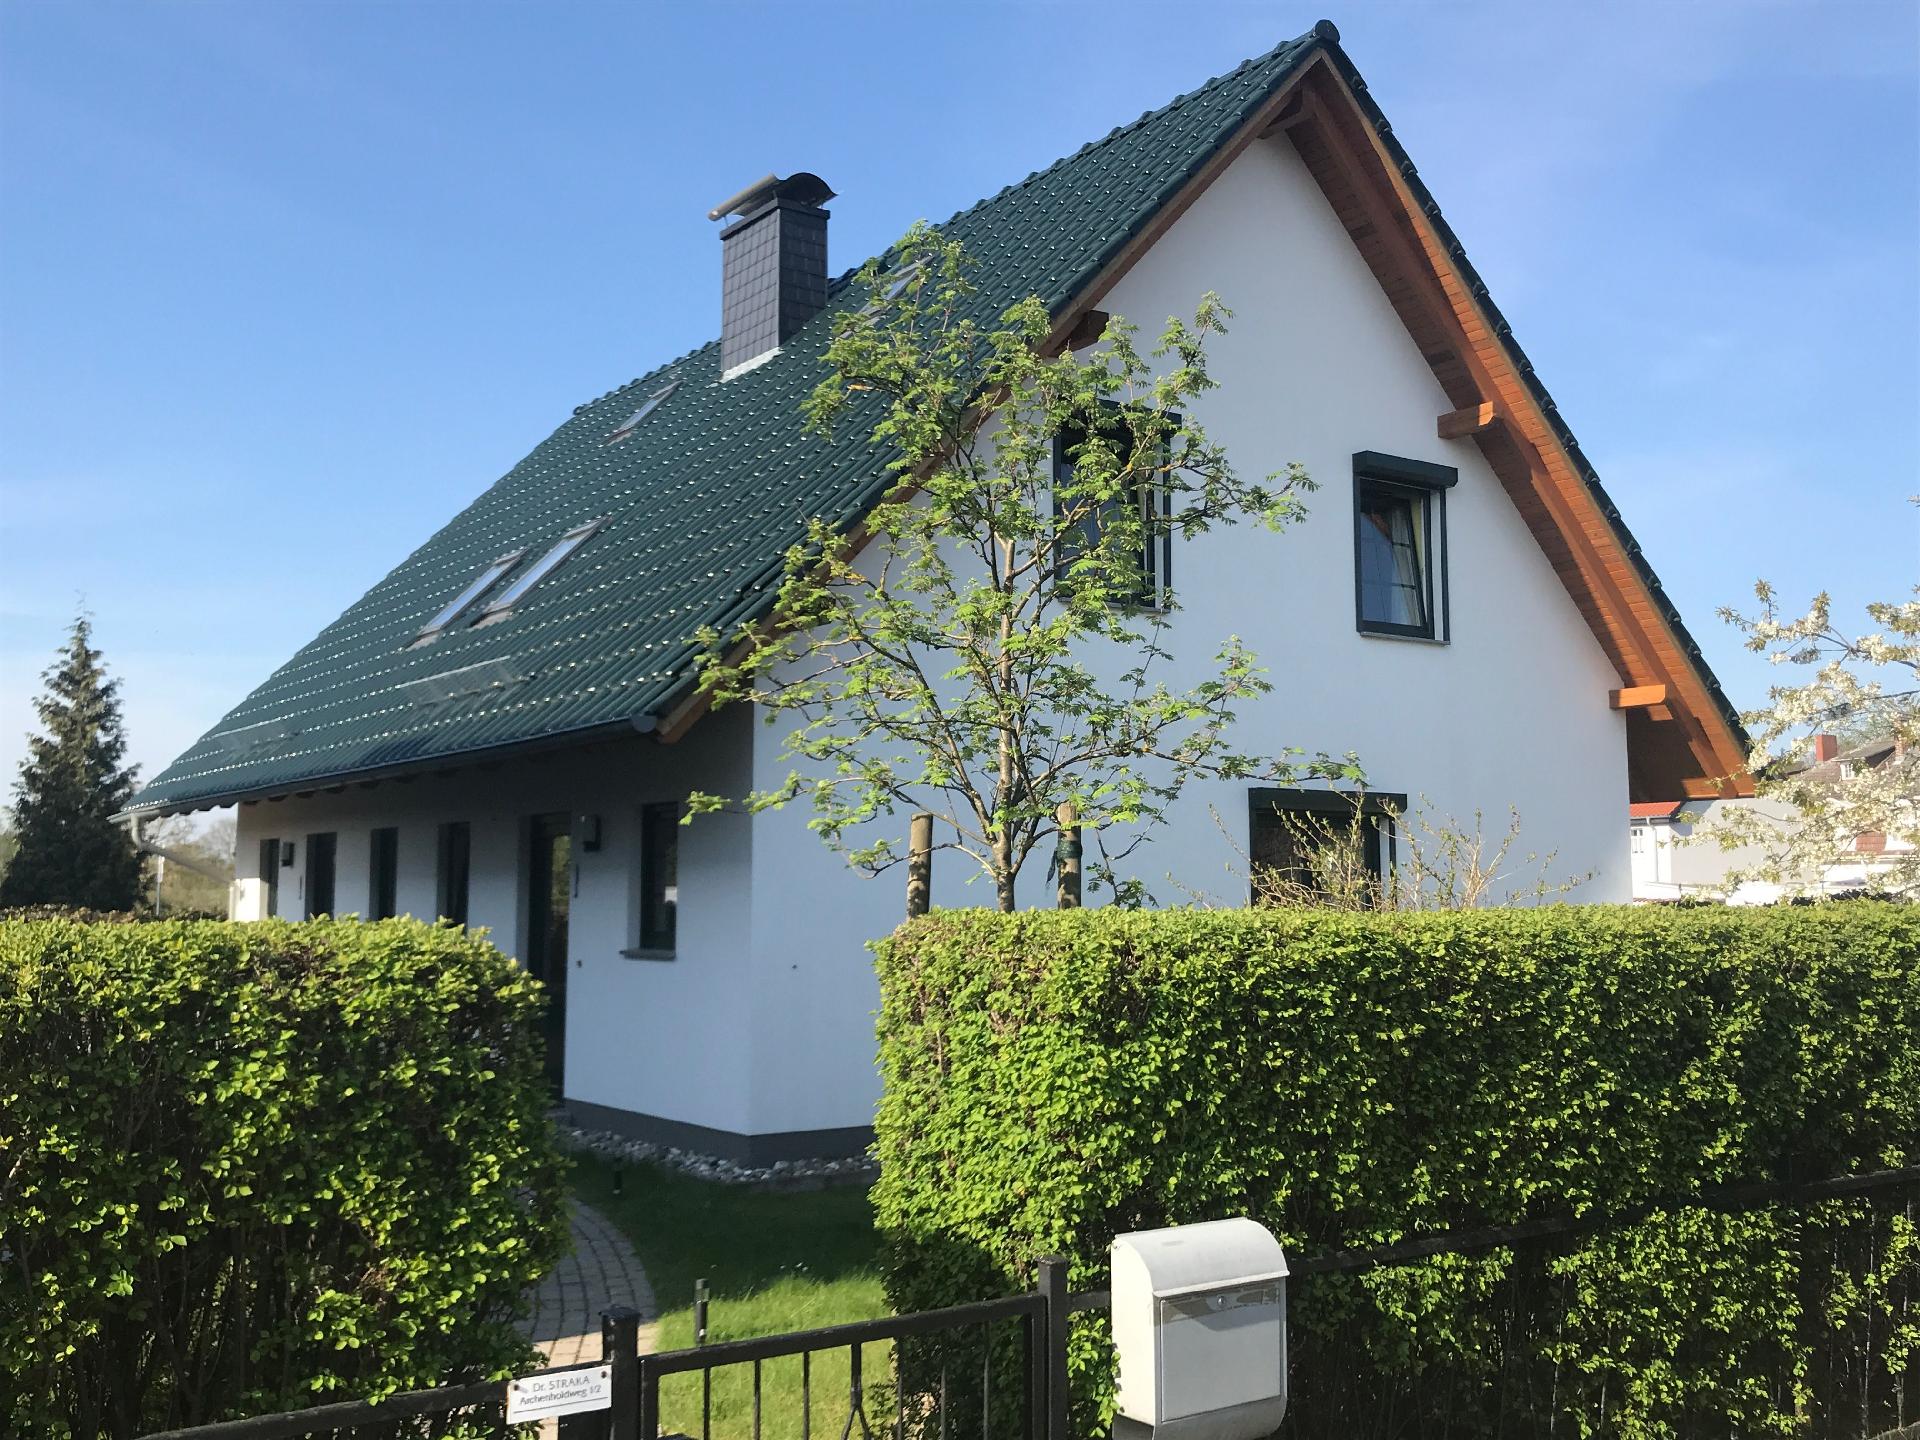 Ferienhaus in Bansin mit Terrasse, Grill und Garte Ferienhaus in Mecklenburg Vorpommern